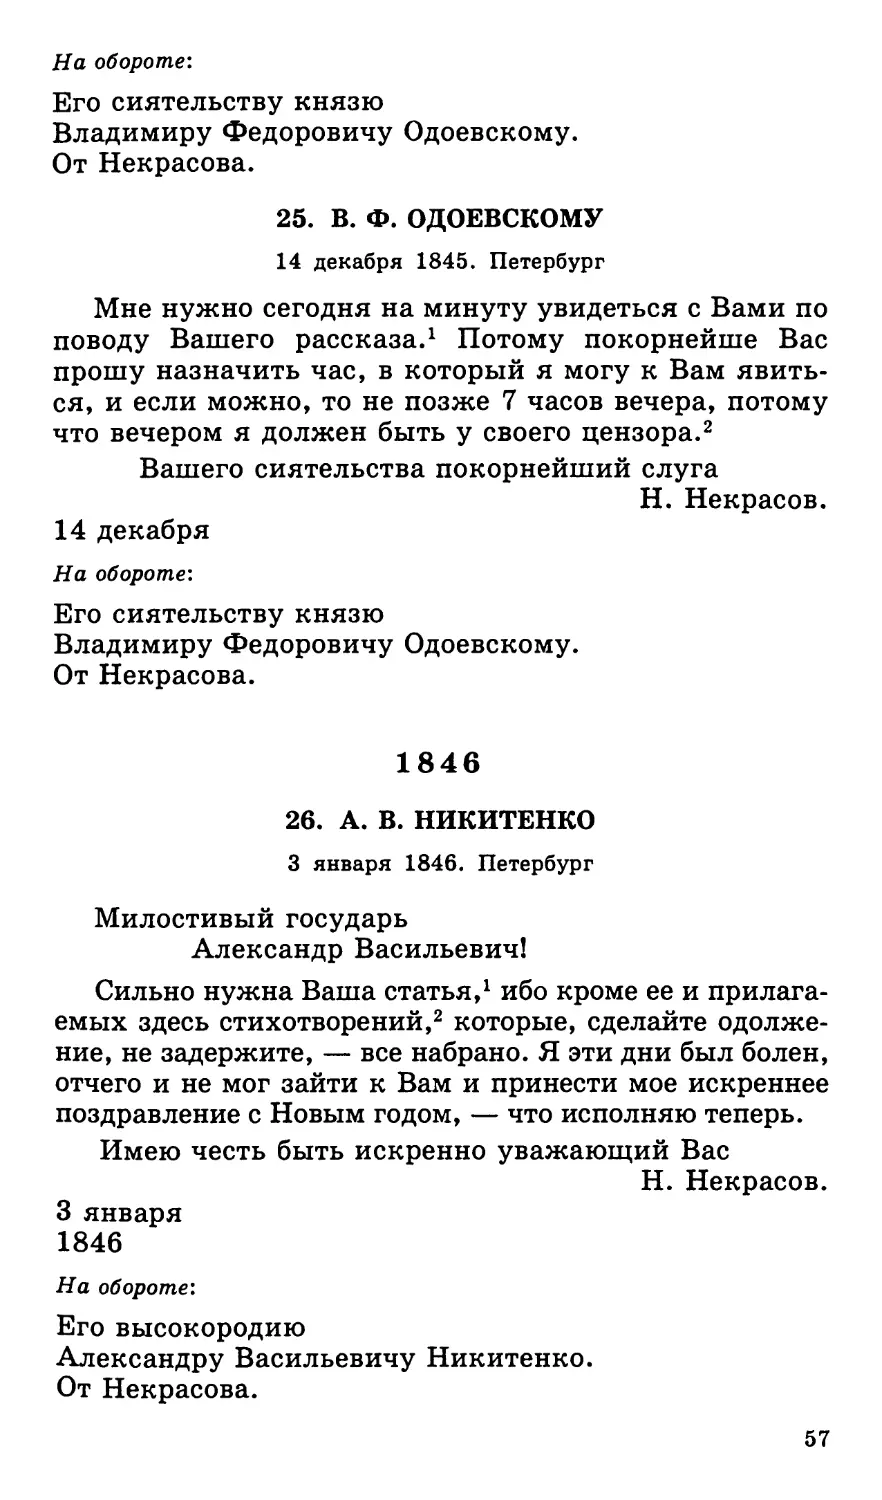 25. В. Ф. Одоевскому. 14 декабря
1846